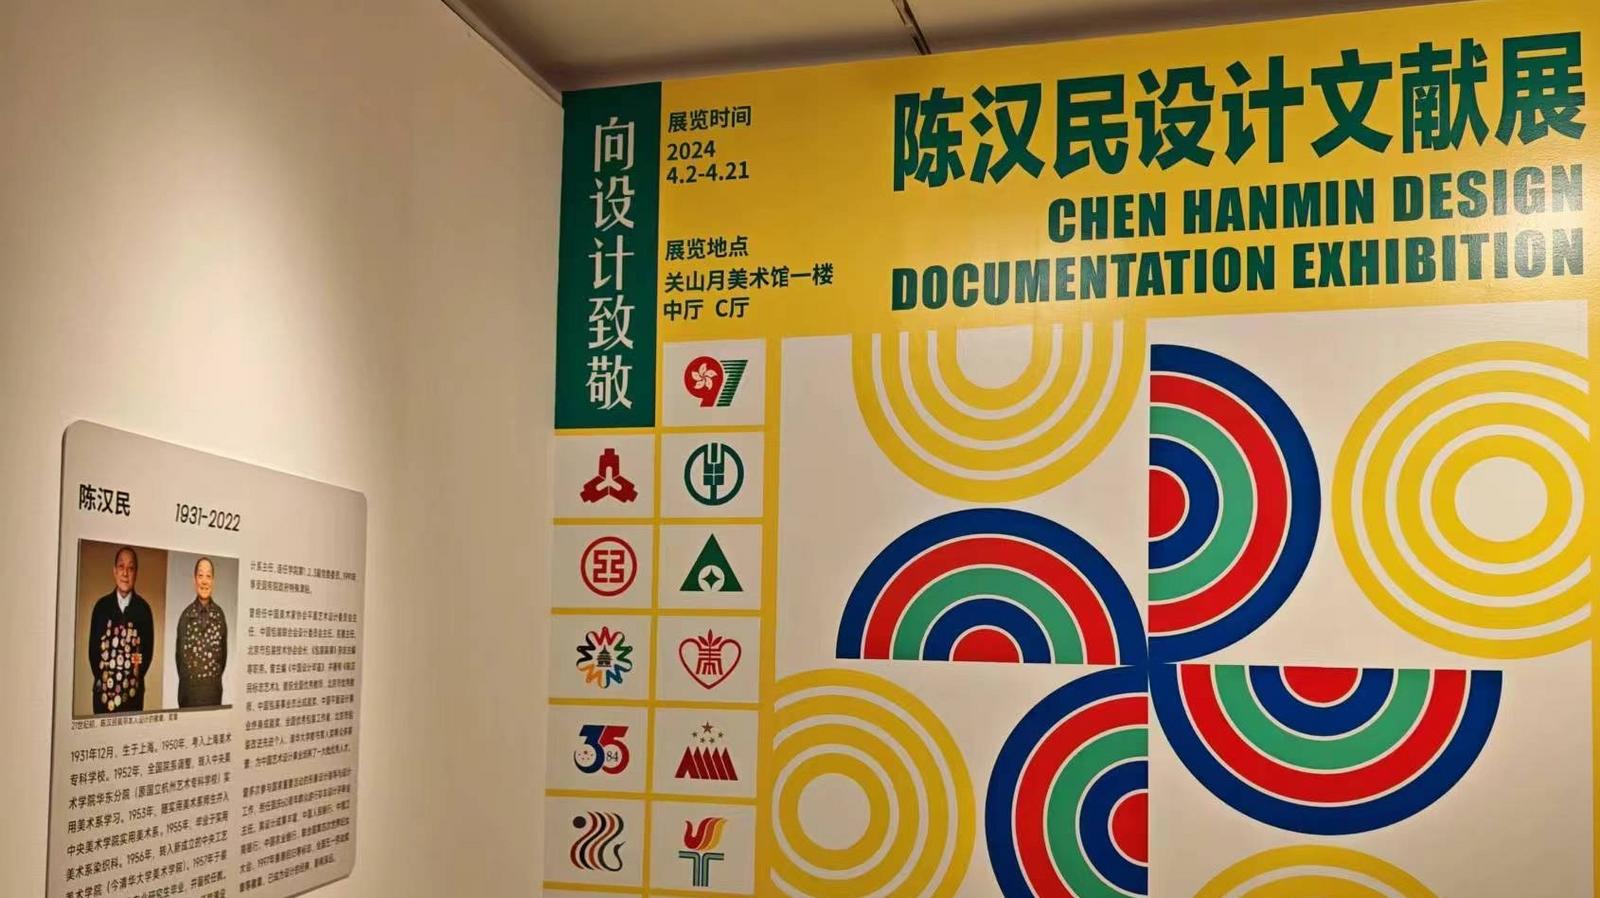 “向设计致敬——陈汉民设计文献展”在深圳关山月美术馆开幕